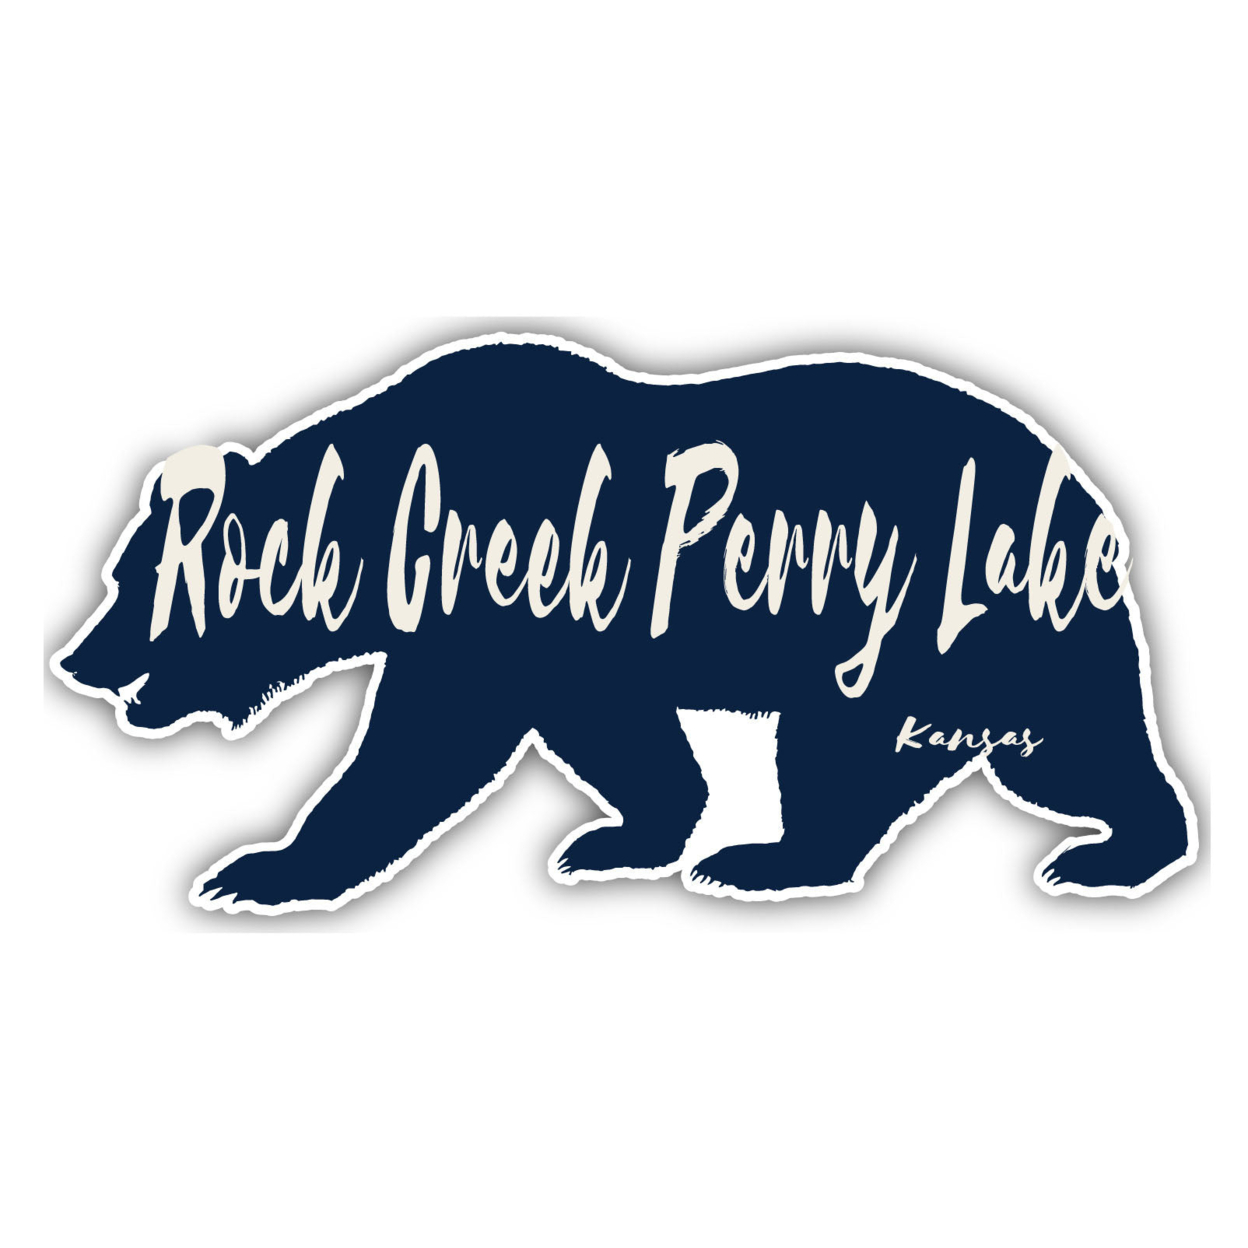 Rock Creek Perry Lake Kansas Souvenir Decorative Stickers (Choose Theme And Size) - Single Unit, 2-Inch, Bear